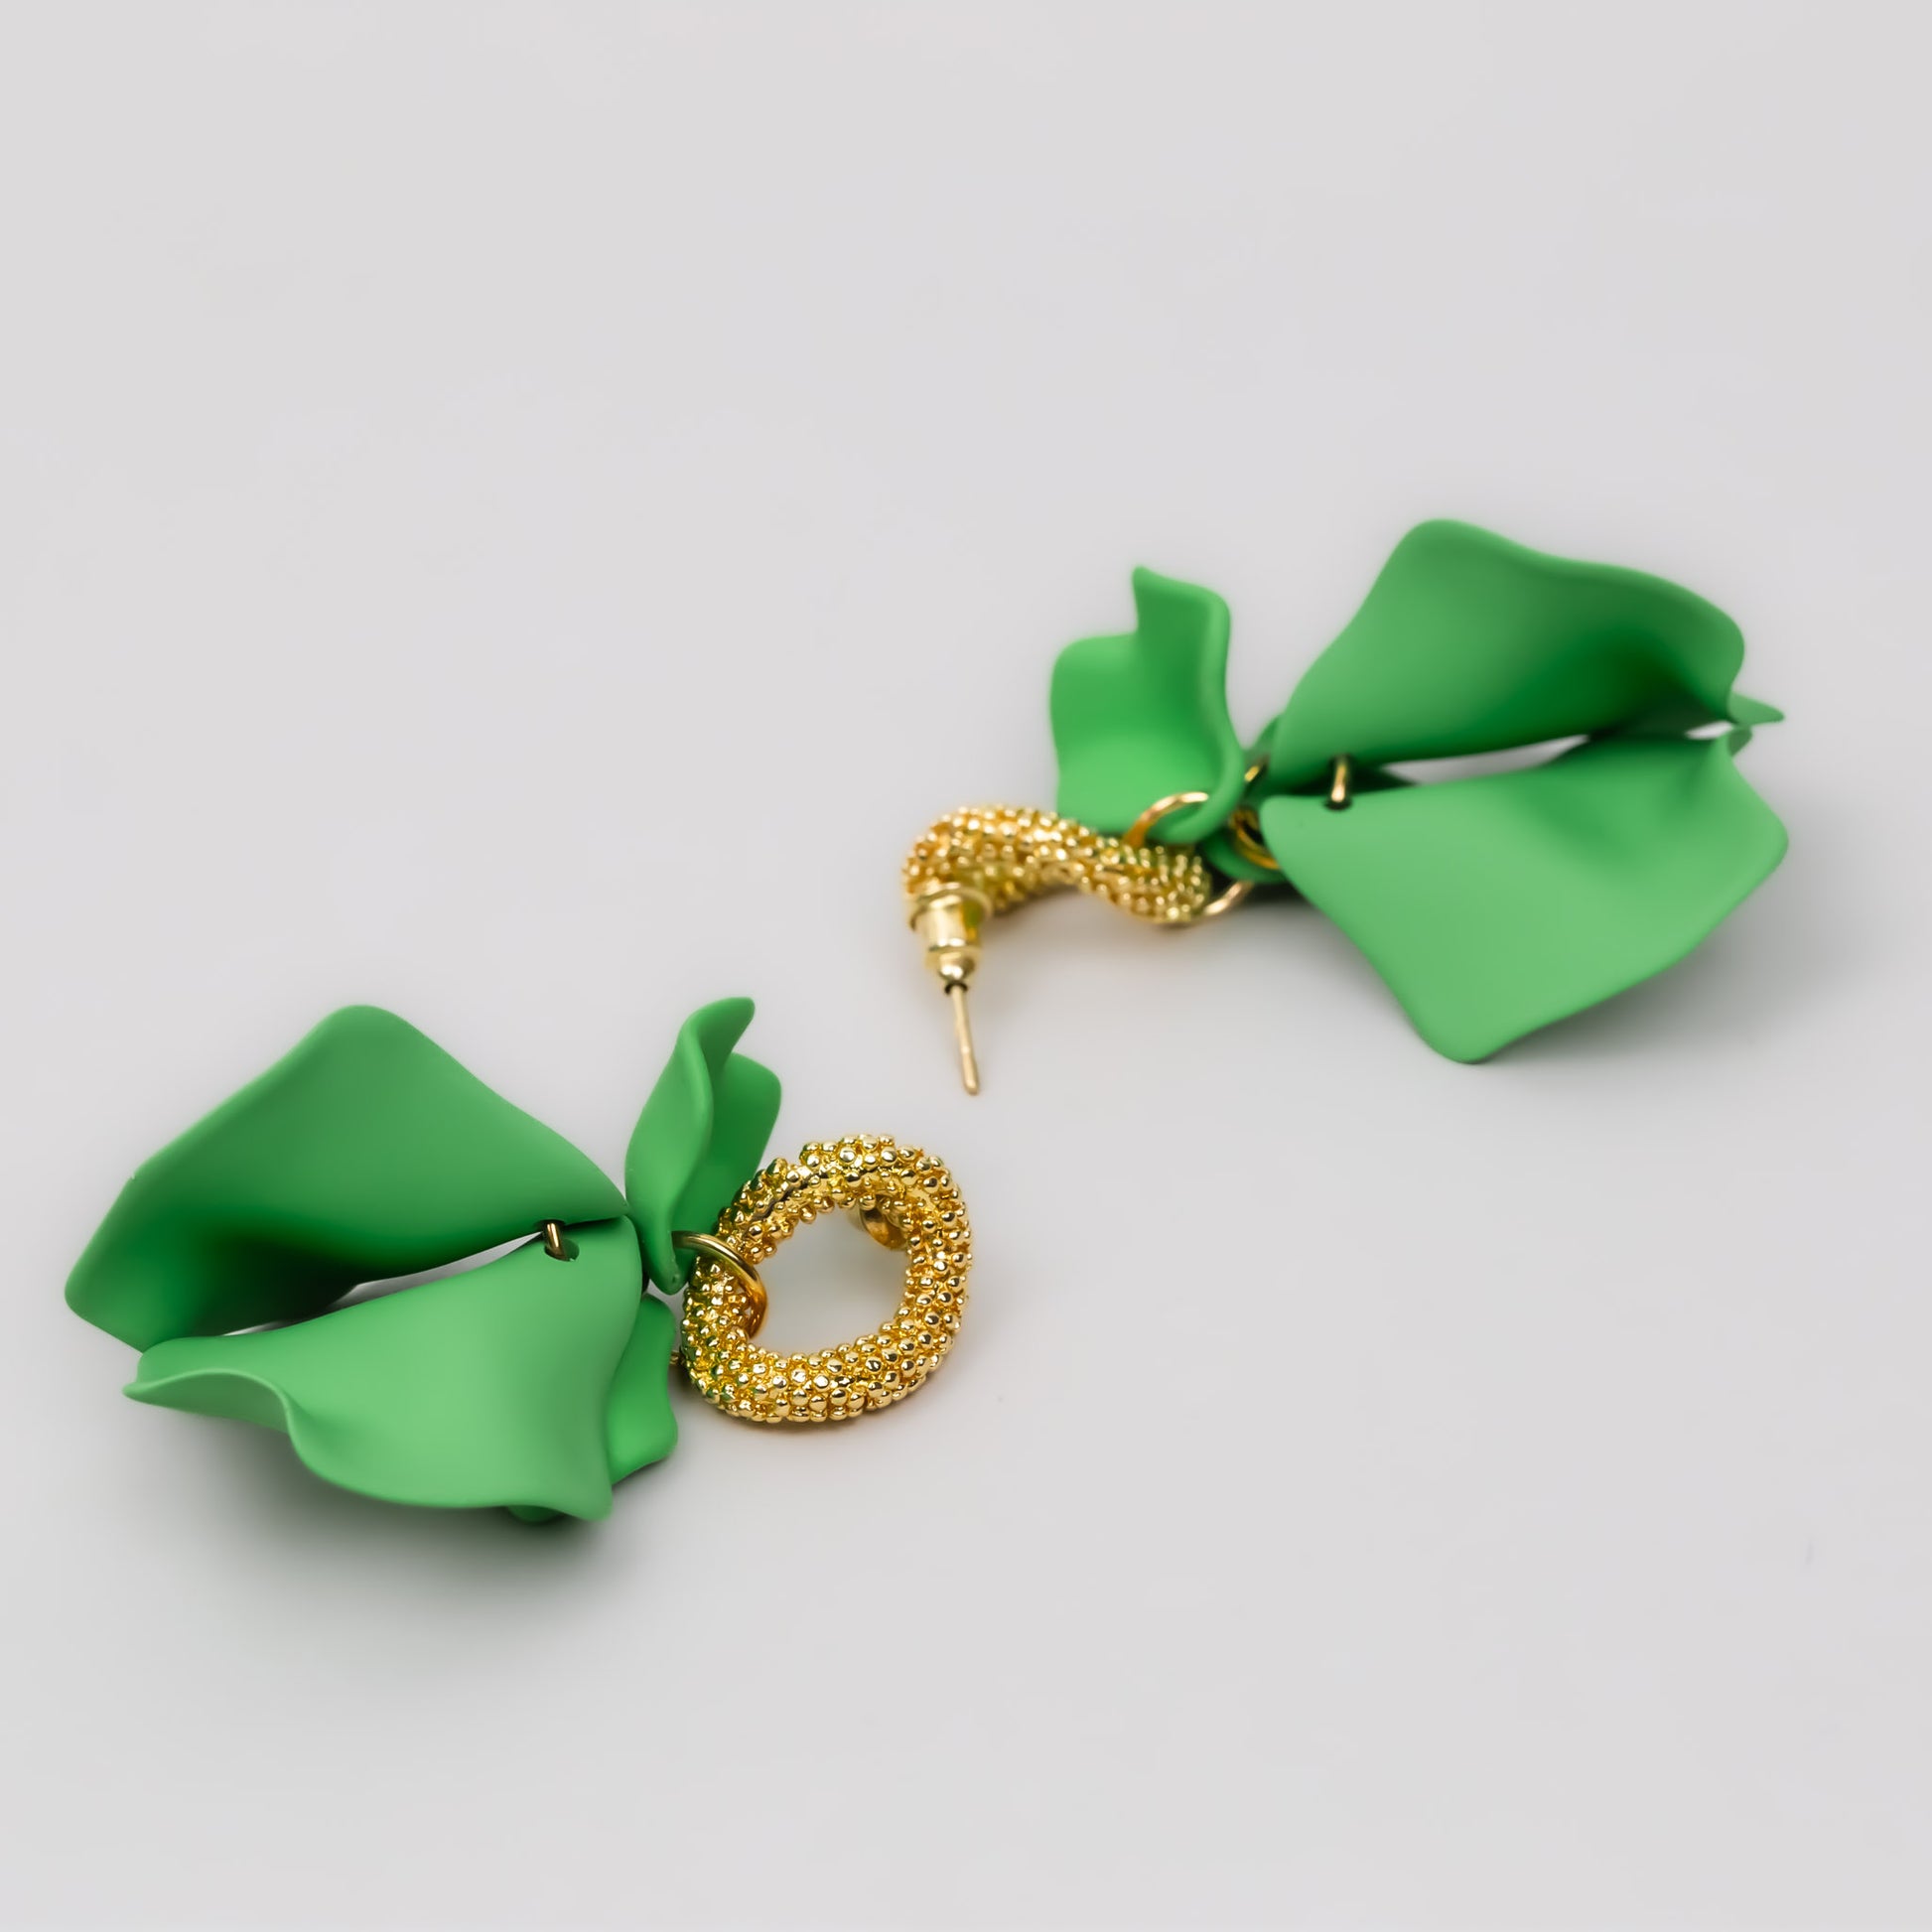 Cercei cu petale fine siliconate - Verde, Auriu